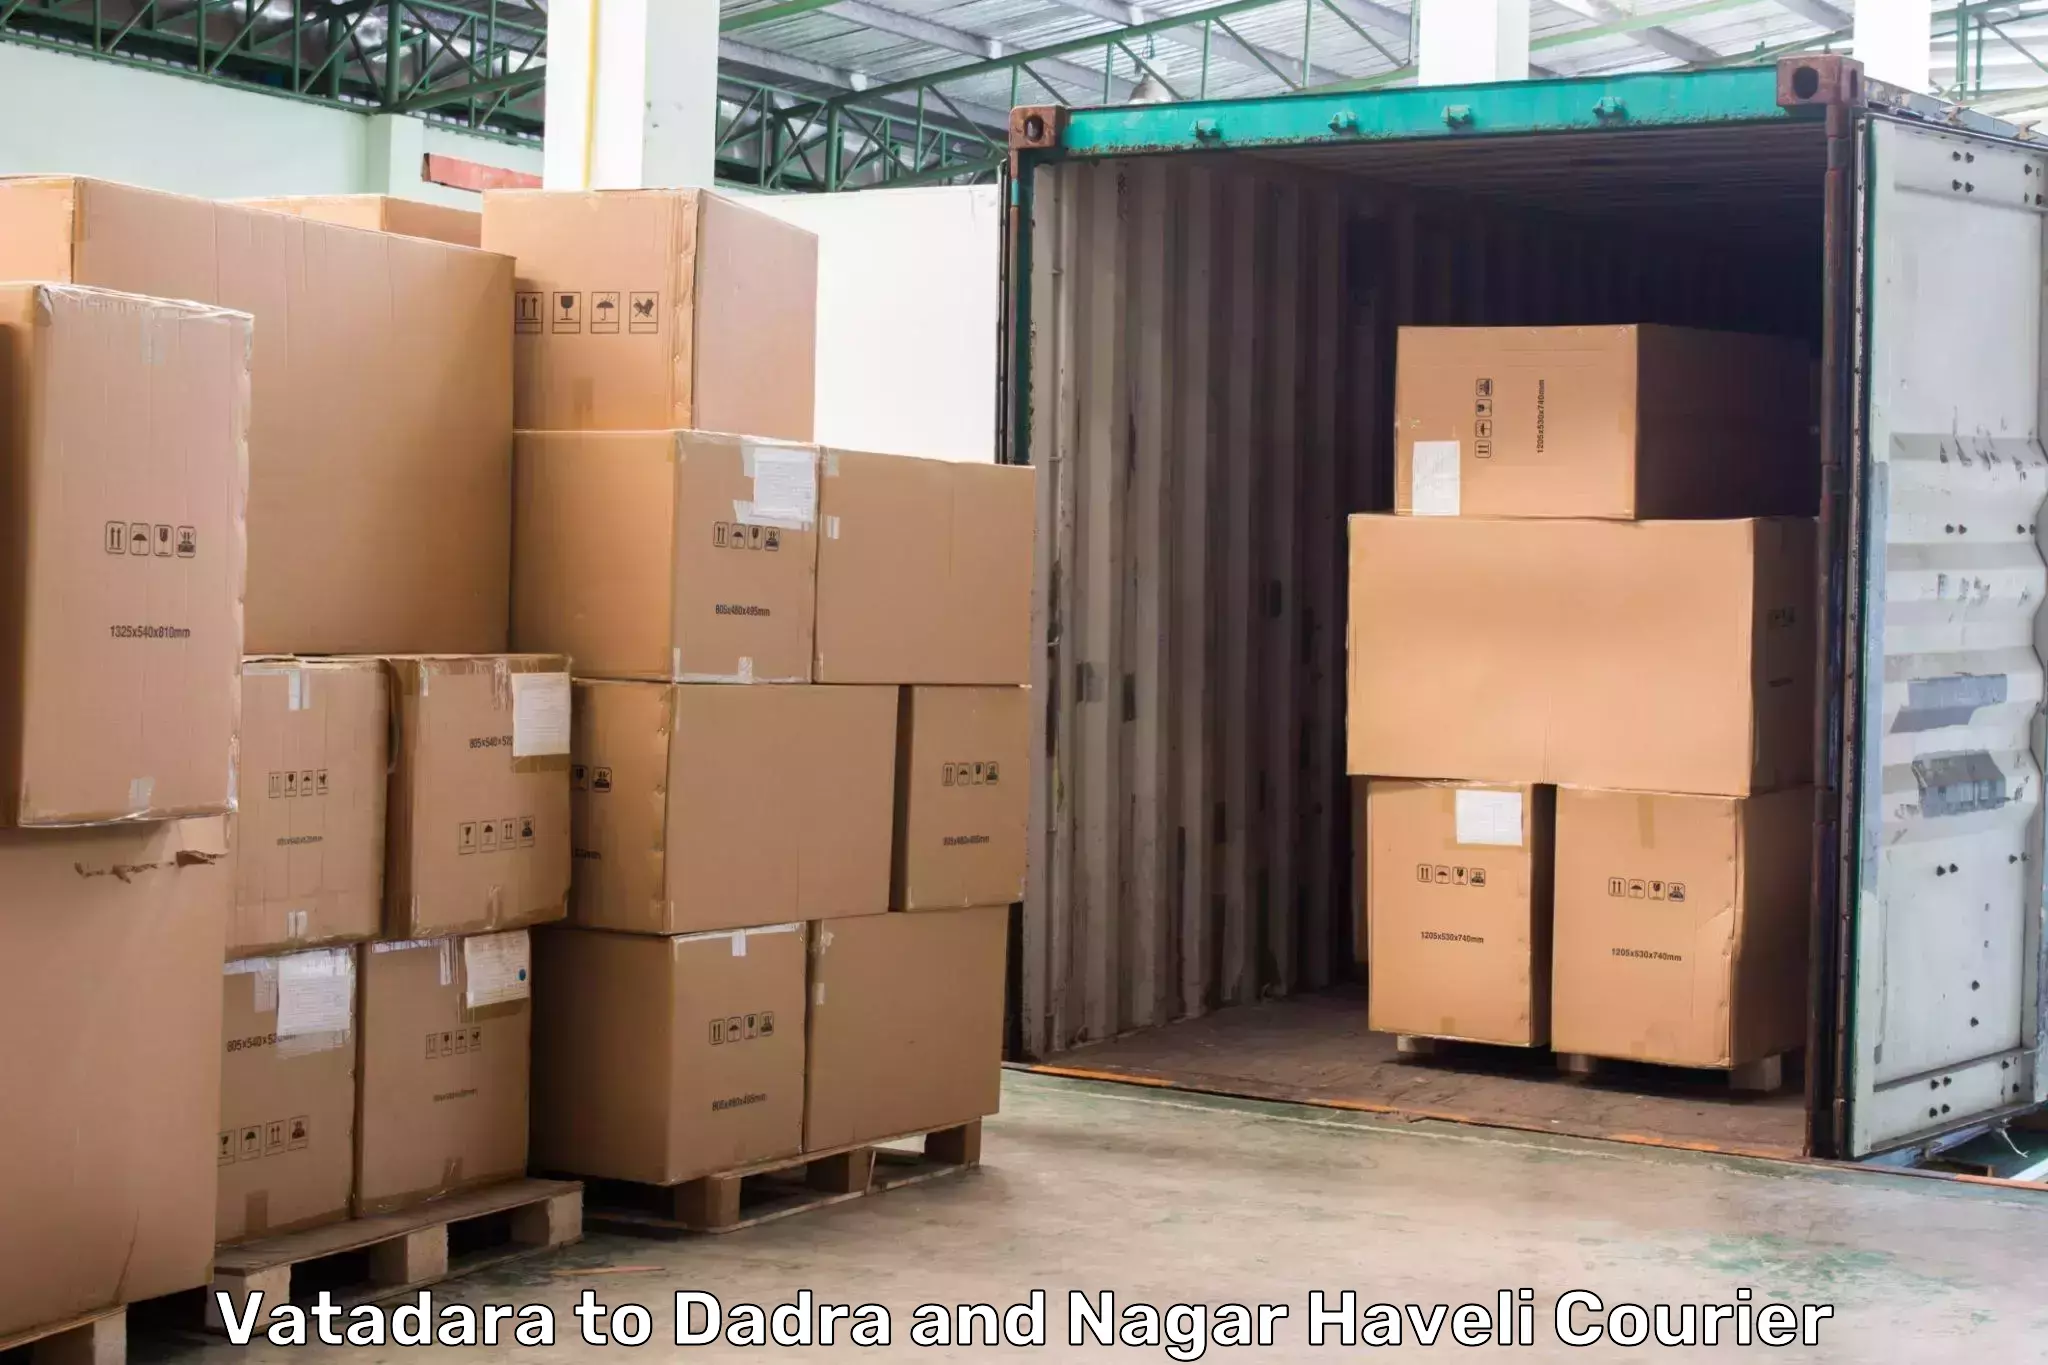 Premium courier solutions Vatadara to Dadra and Nagar Haveli